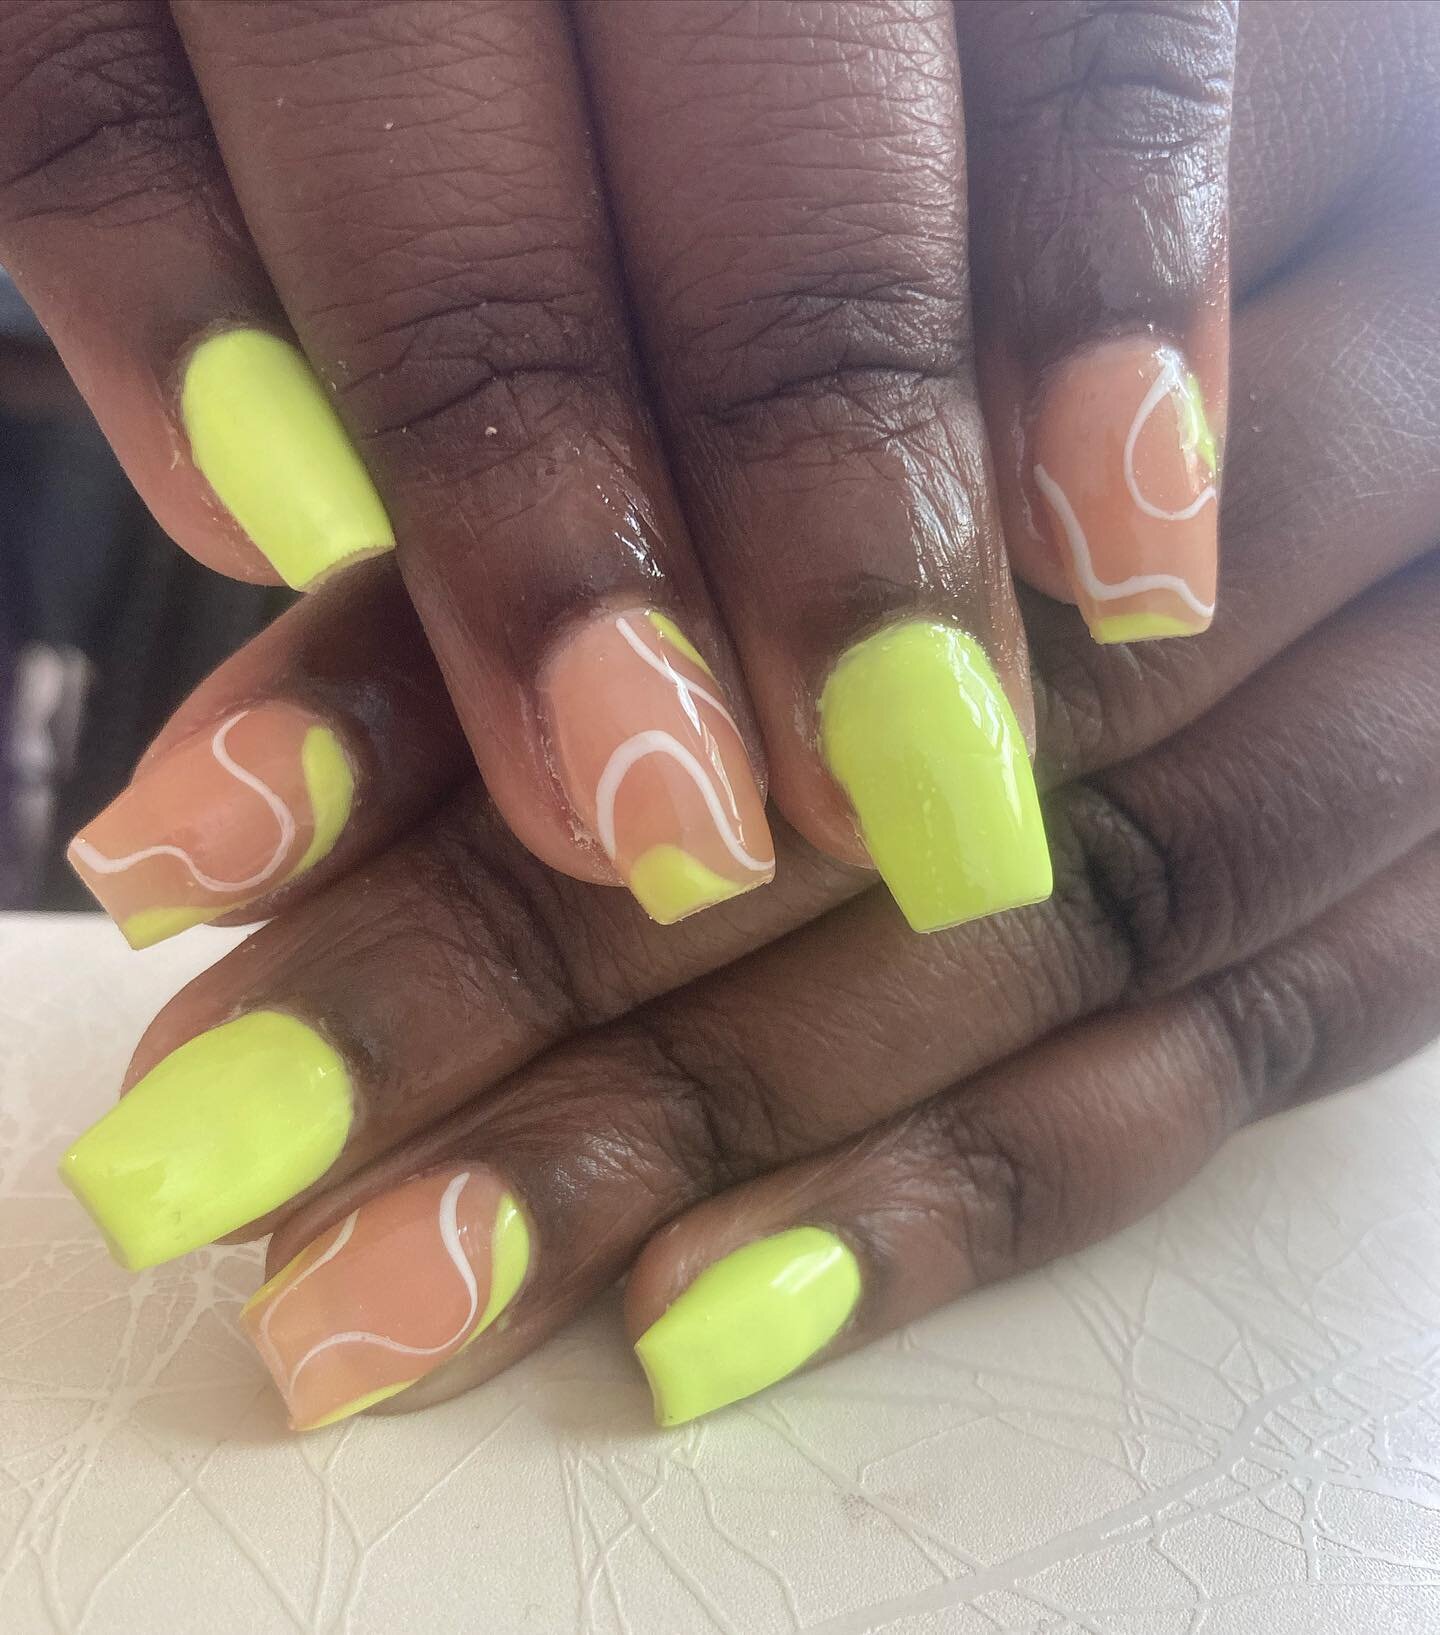 Short and neon. Gearing up for summer!

#polygelnails #nails #shortnails #nailart #nailartist #blacknailtech #nailstyle #nailstylist #naildesign #brooklynnails #nycnails